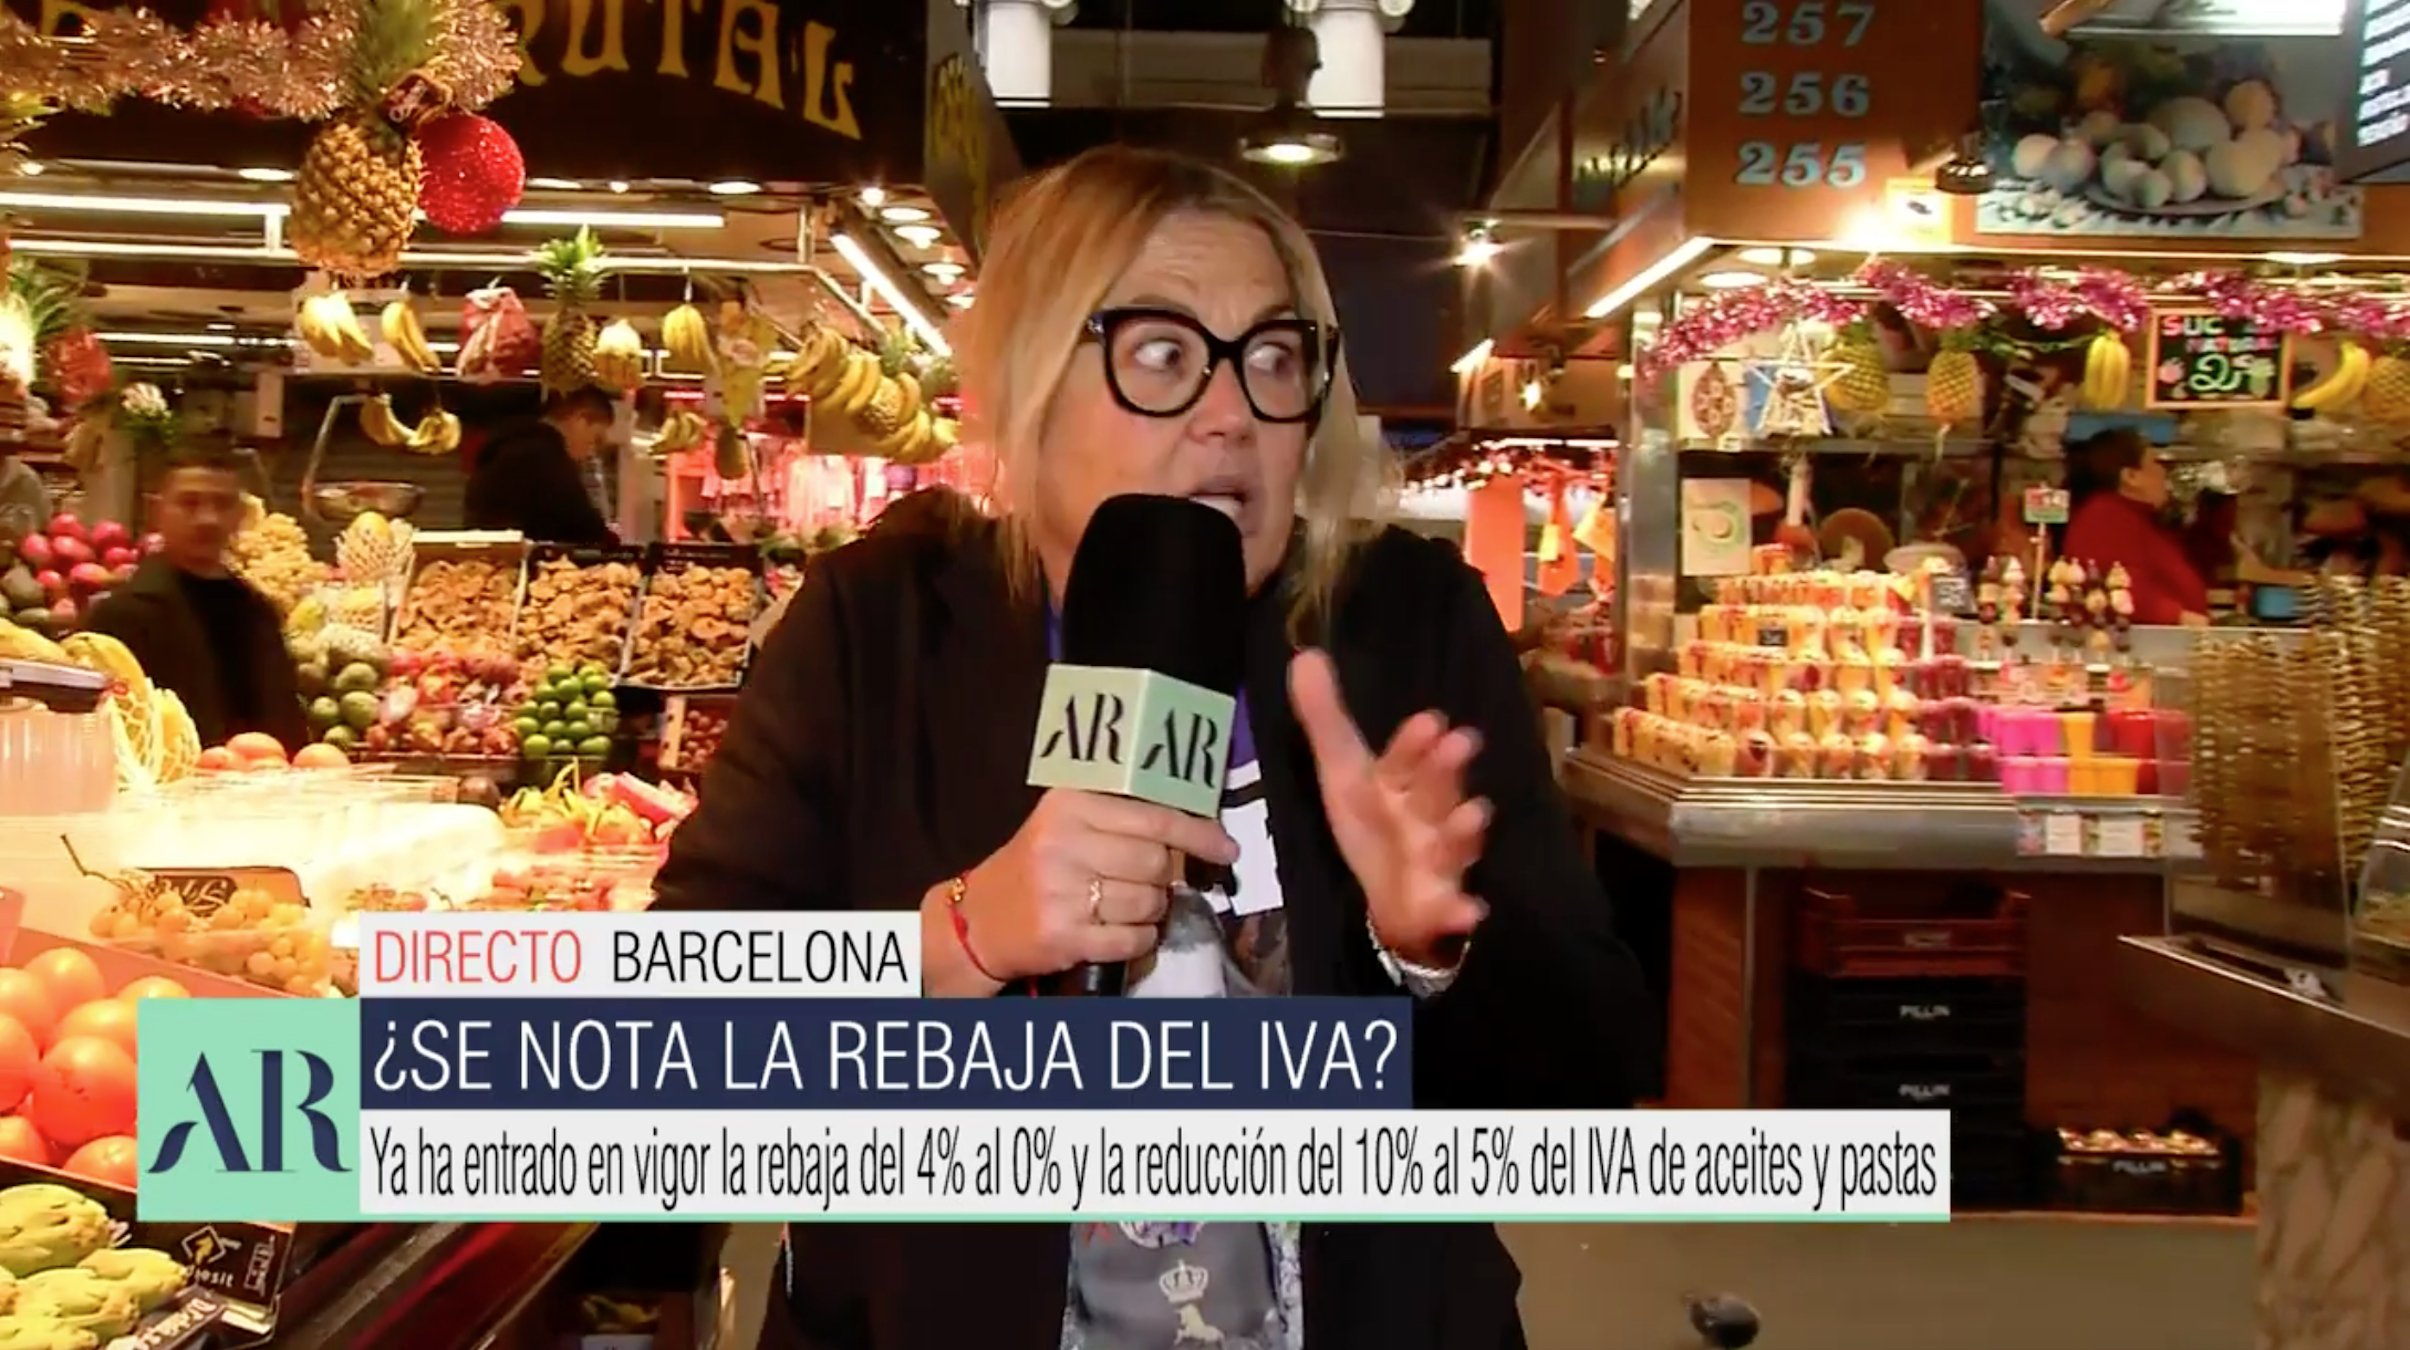 Un fruiter de la Boqueria talla en sec Mayka Navarro i Telecinco: "No puede ser"